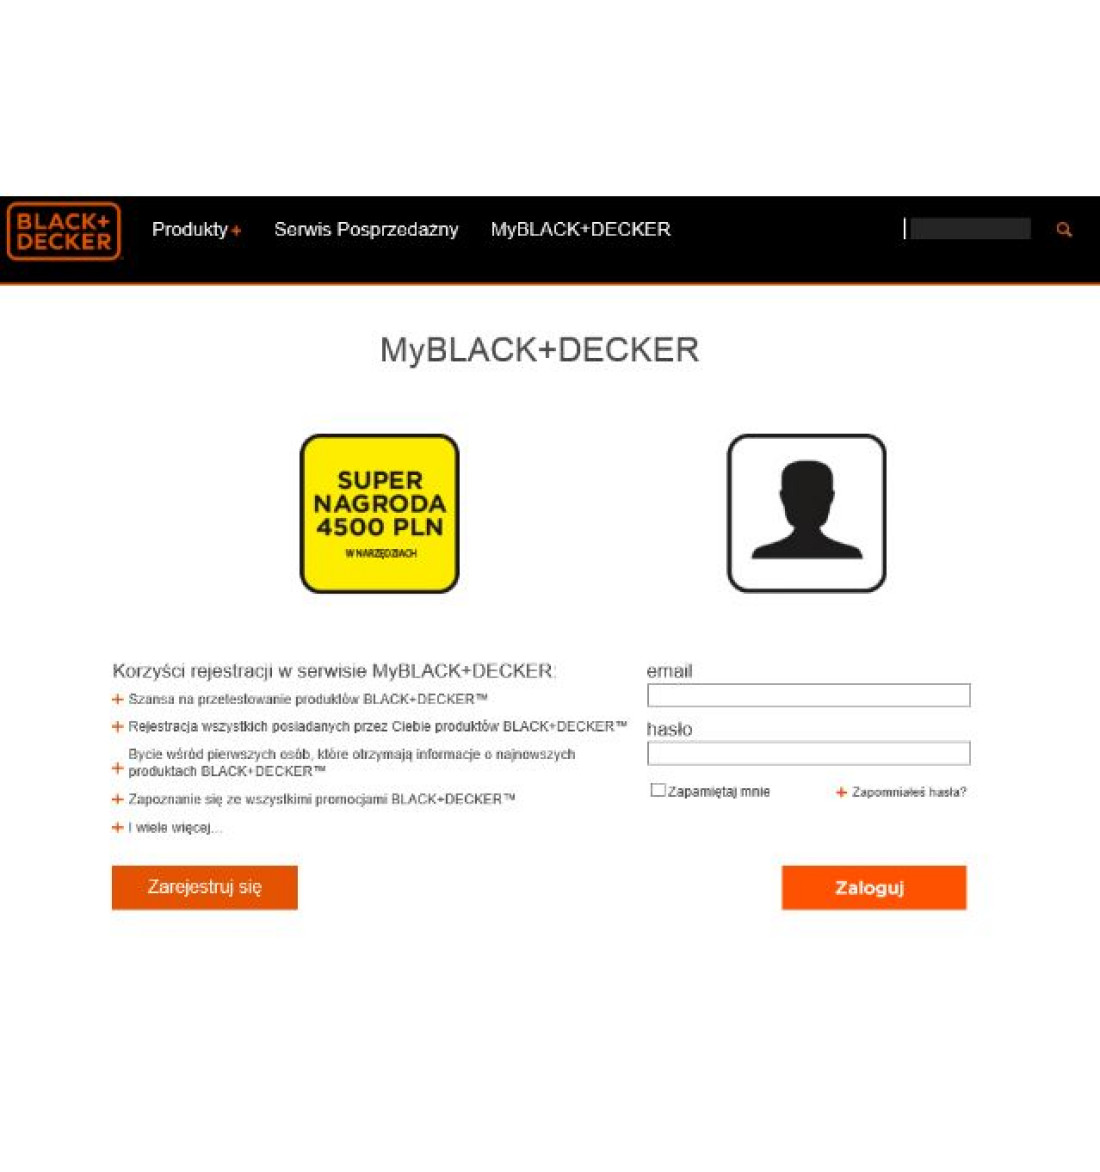 MyBLACK+DECKER - nowy serwis i nagrody warte 4500 zł